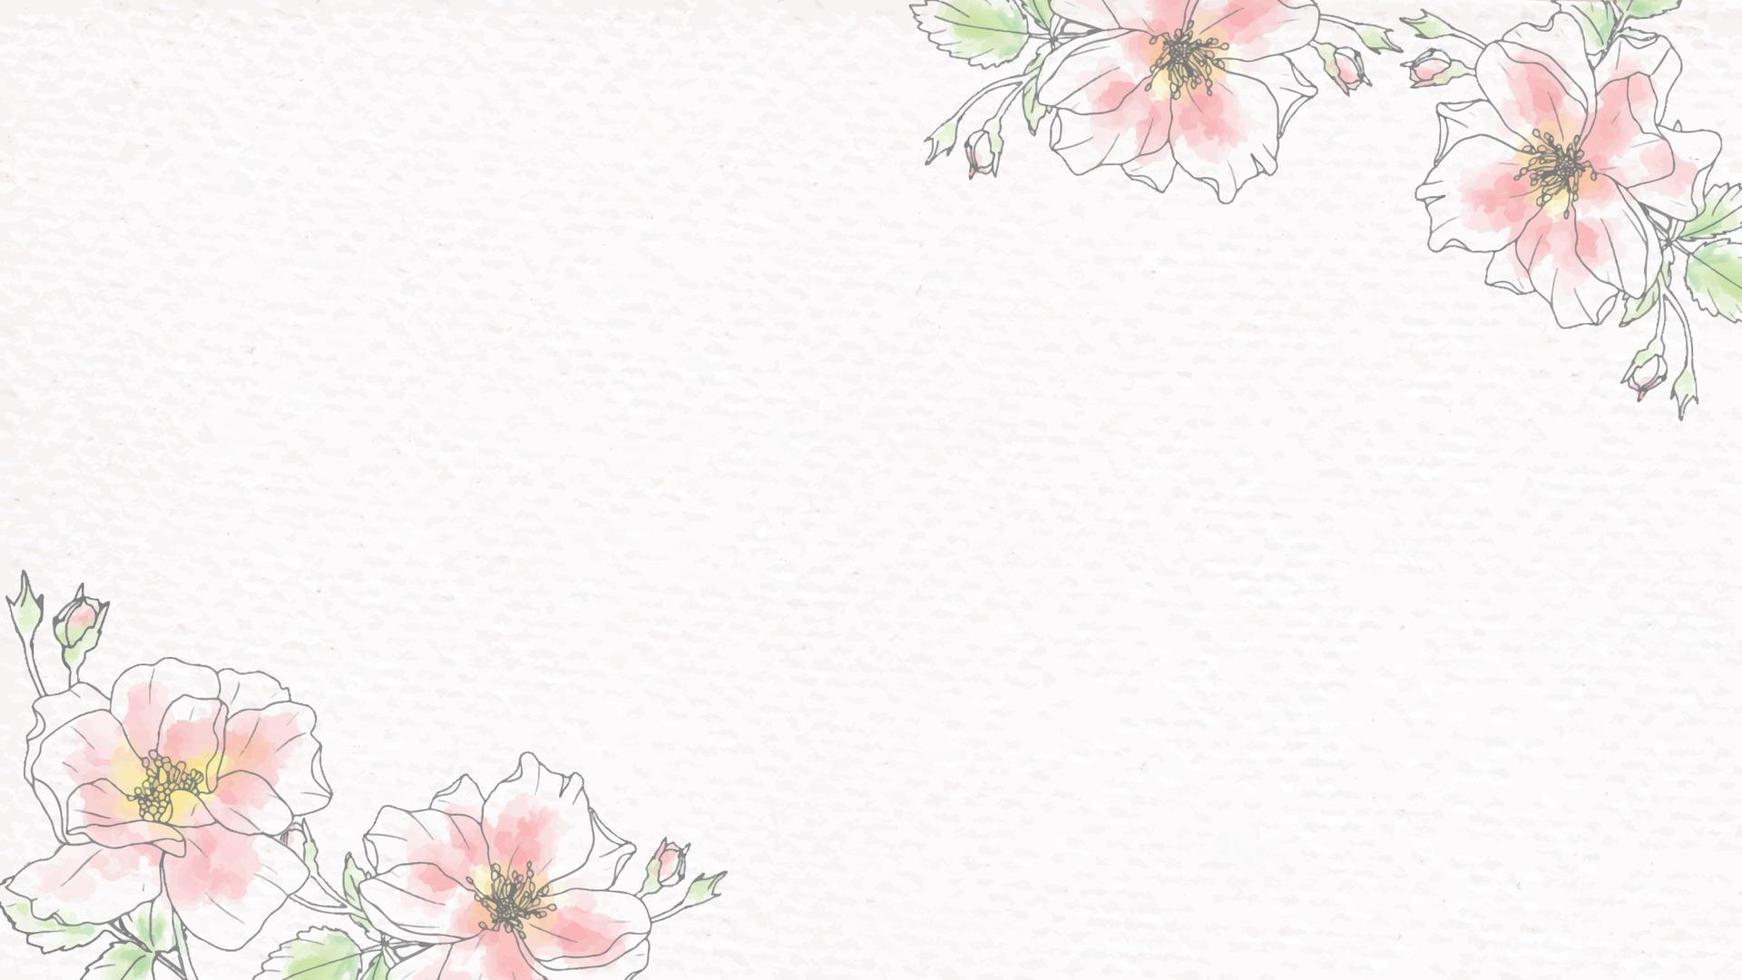 doodle lijntekeningen roos bloemboeket op papier achtergrond vector